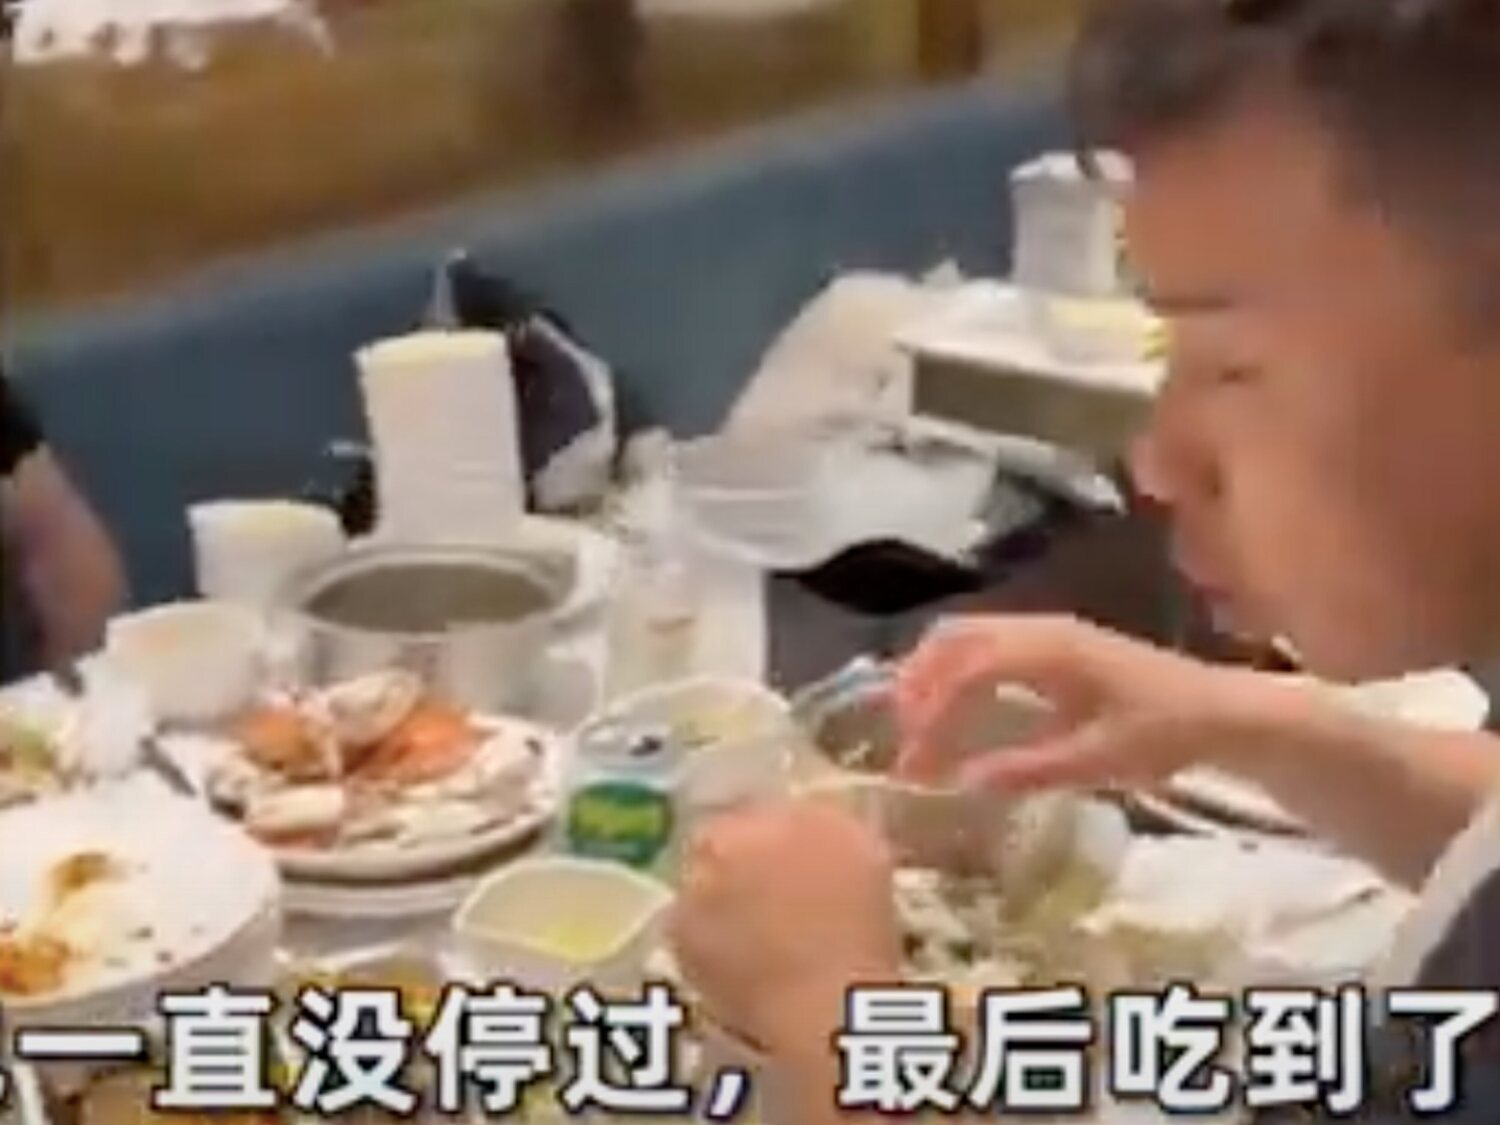 El viral que arrasa: siete amigos se comen 300 cangrejos y 80 postres en un buffet por "recuperar la inversión"